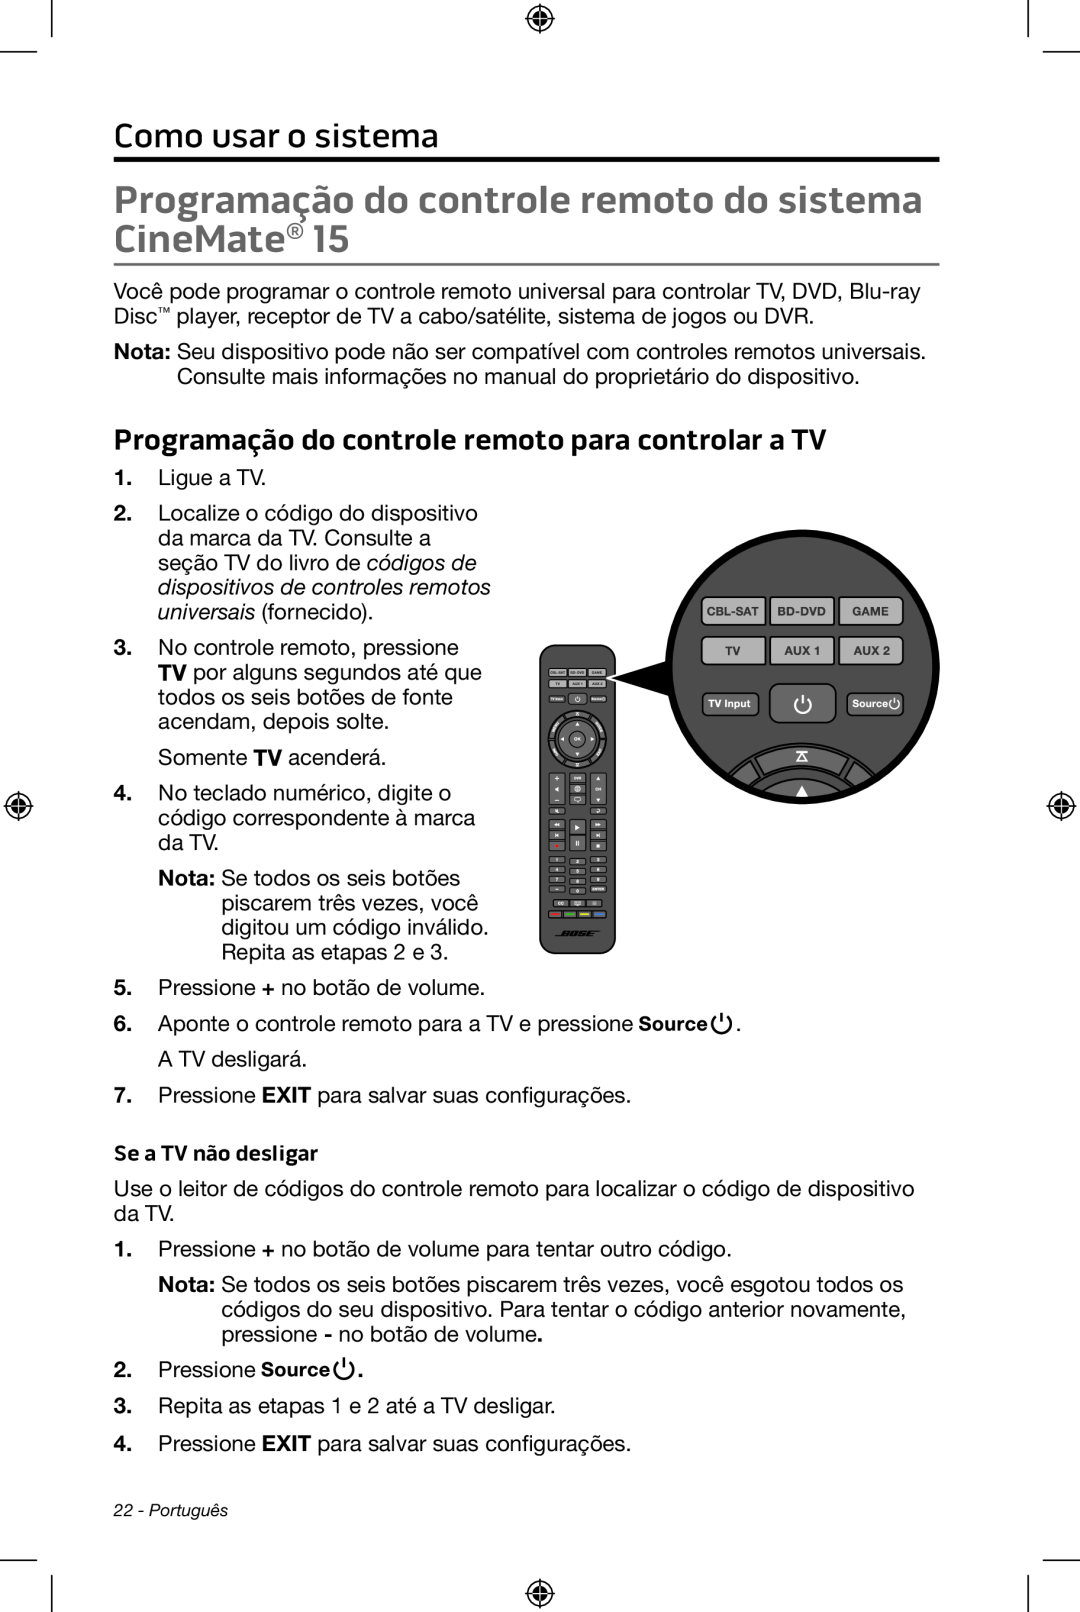 Bose CineMate 15/10 manual Como usar o sistema, Se a TV não desligar 